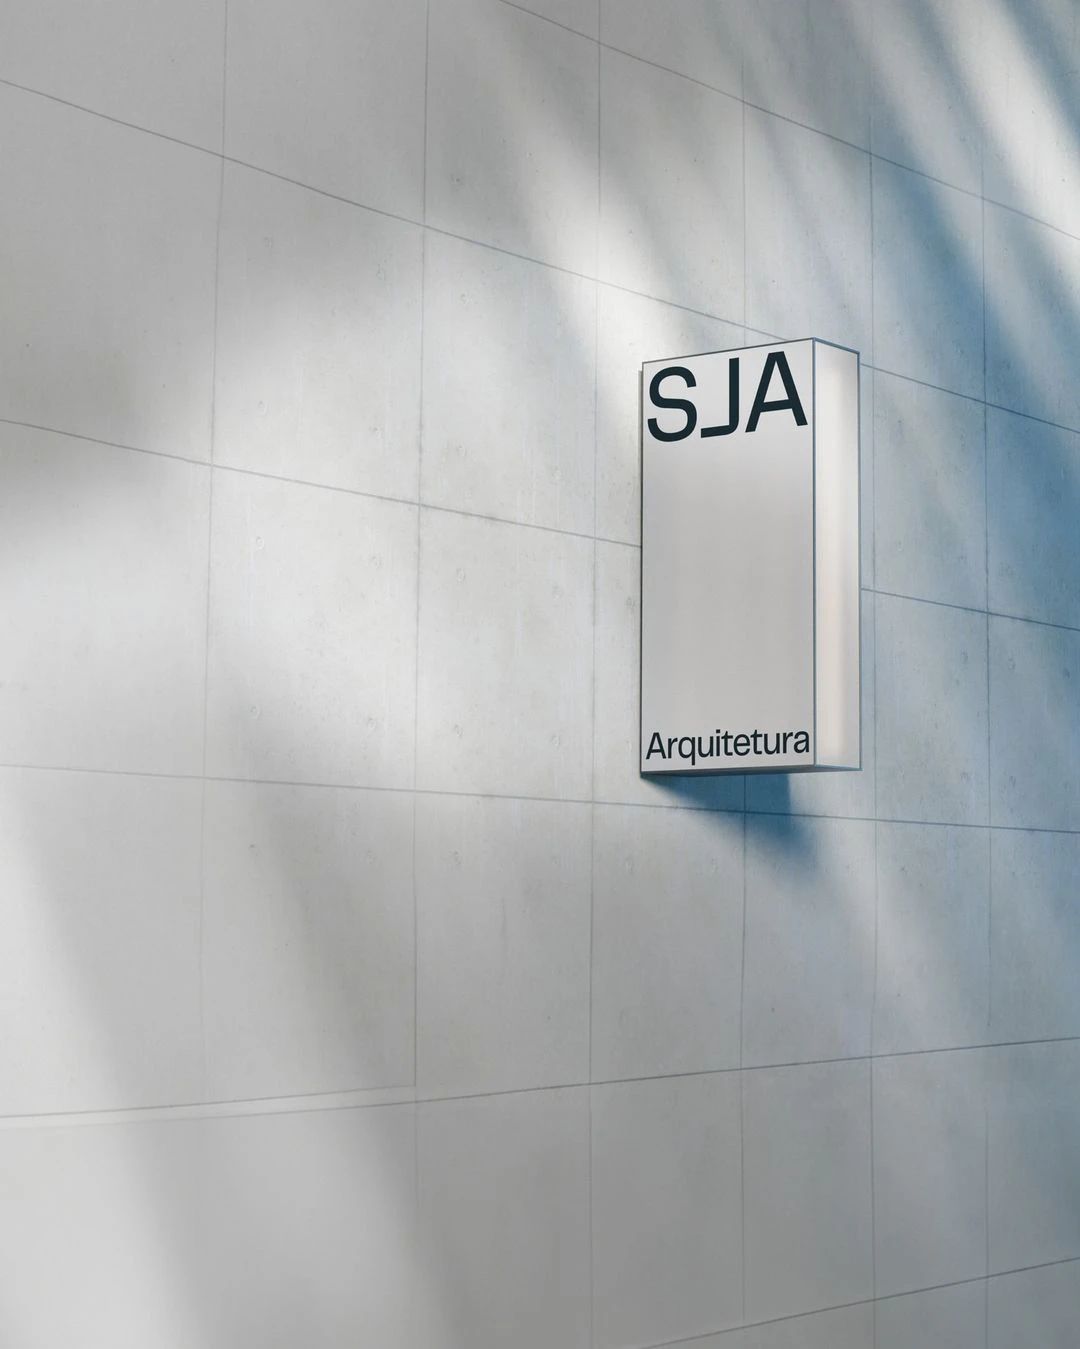 SJA建筑工作室品牌形象重塑